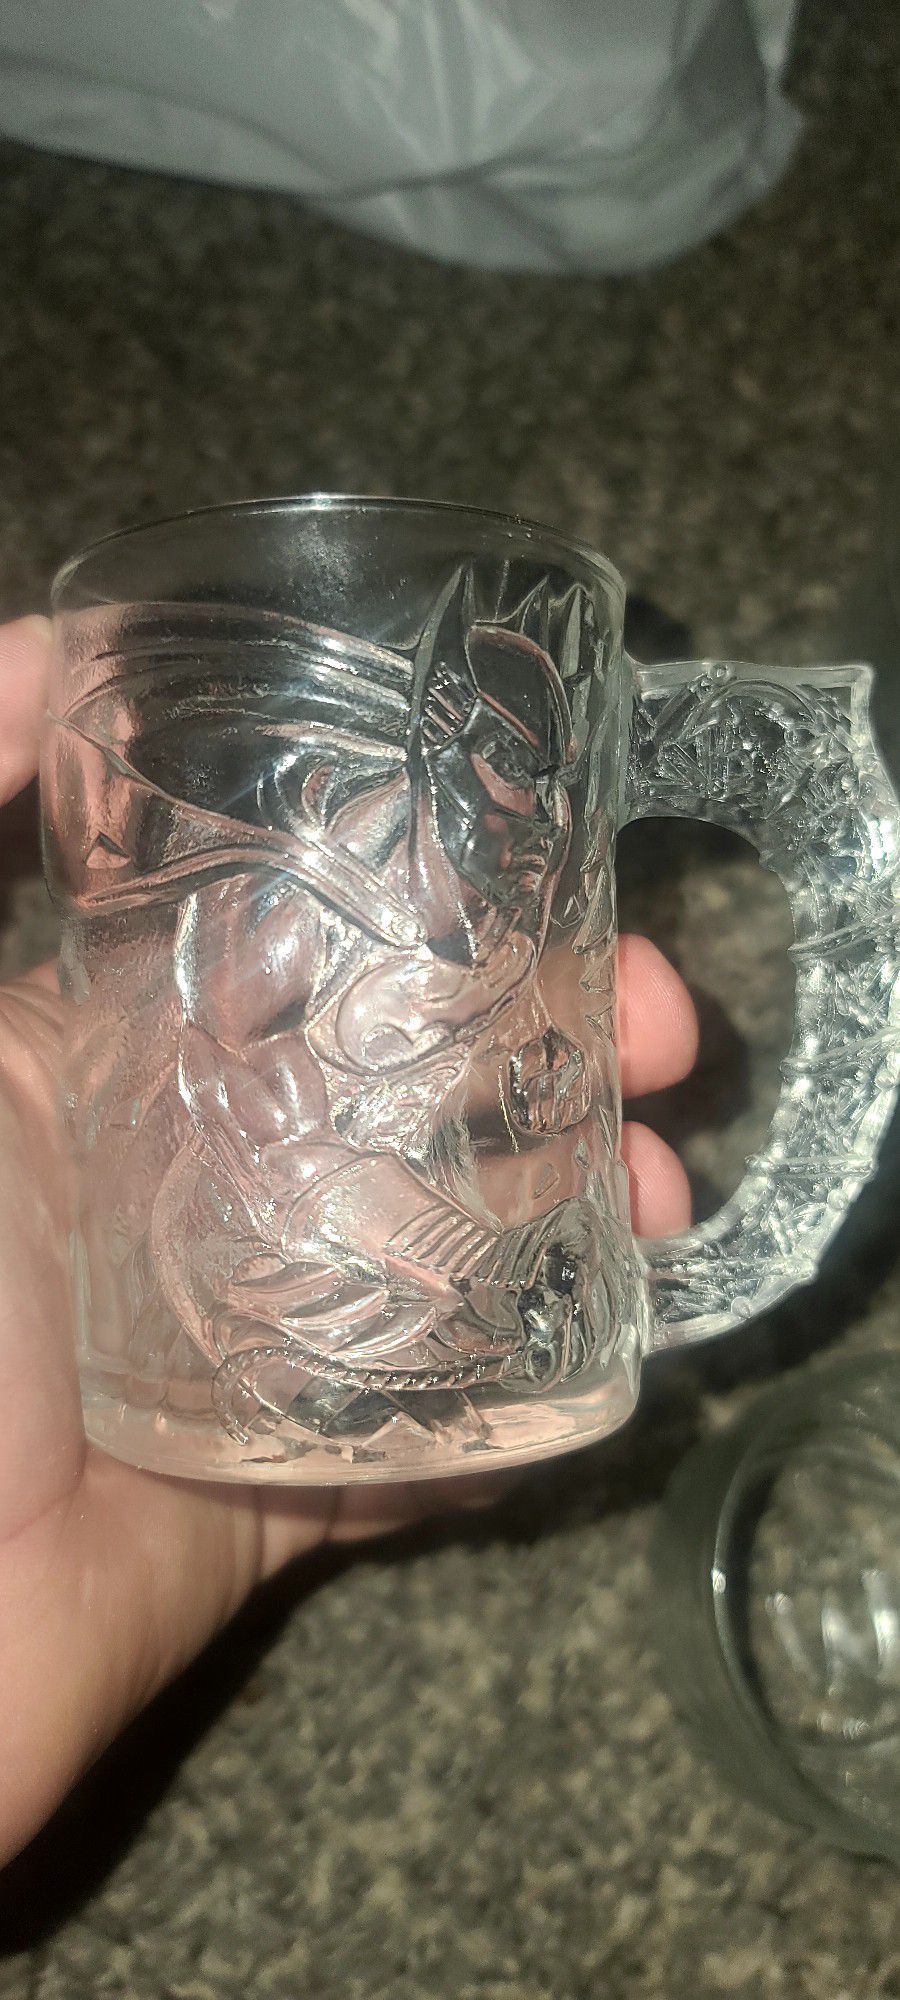 3 Batman Forever McDonald's Vintage Glass Mug Cups (Batman,Riddler,TwoFace)